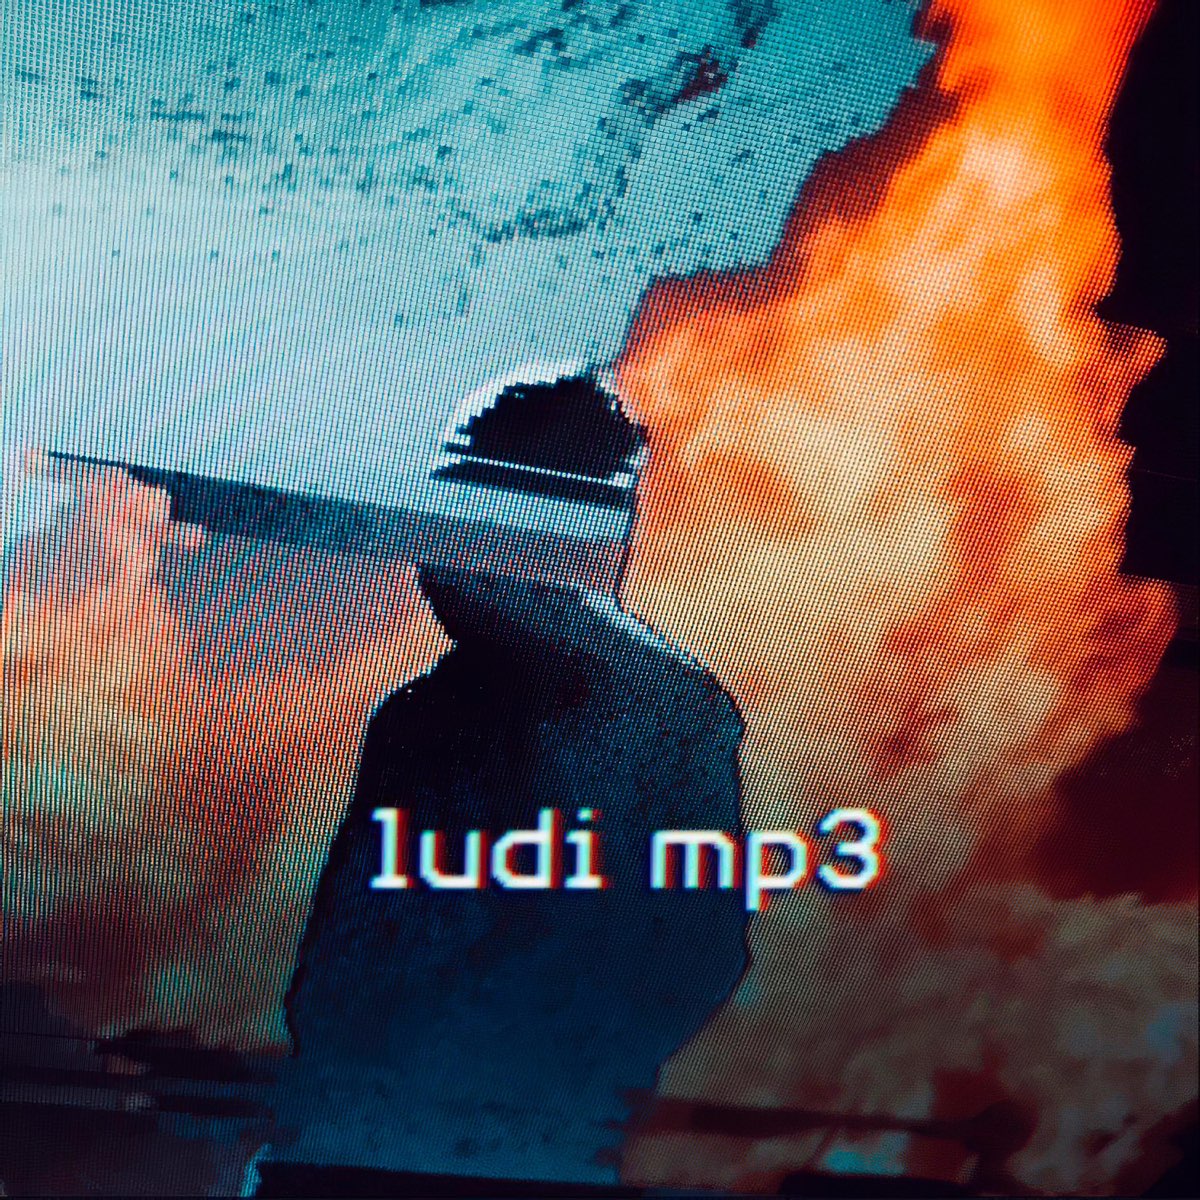 Ludi Mp3 - Single by ATXKA on Apple Music